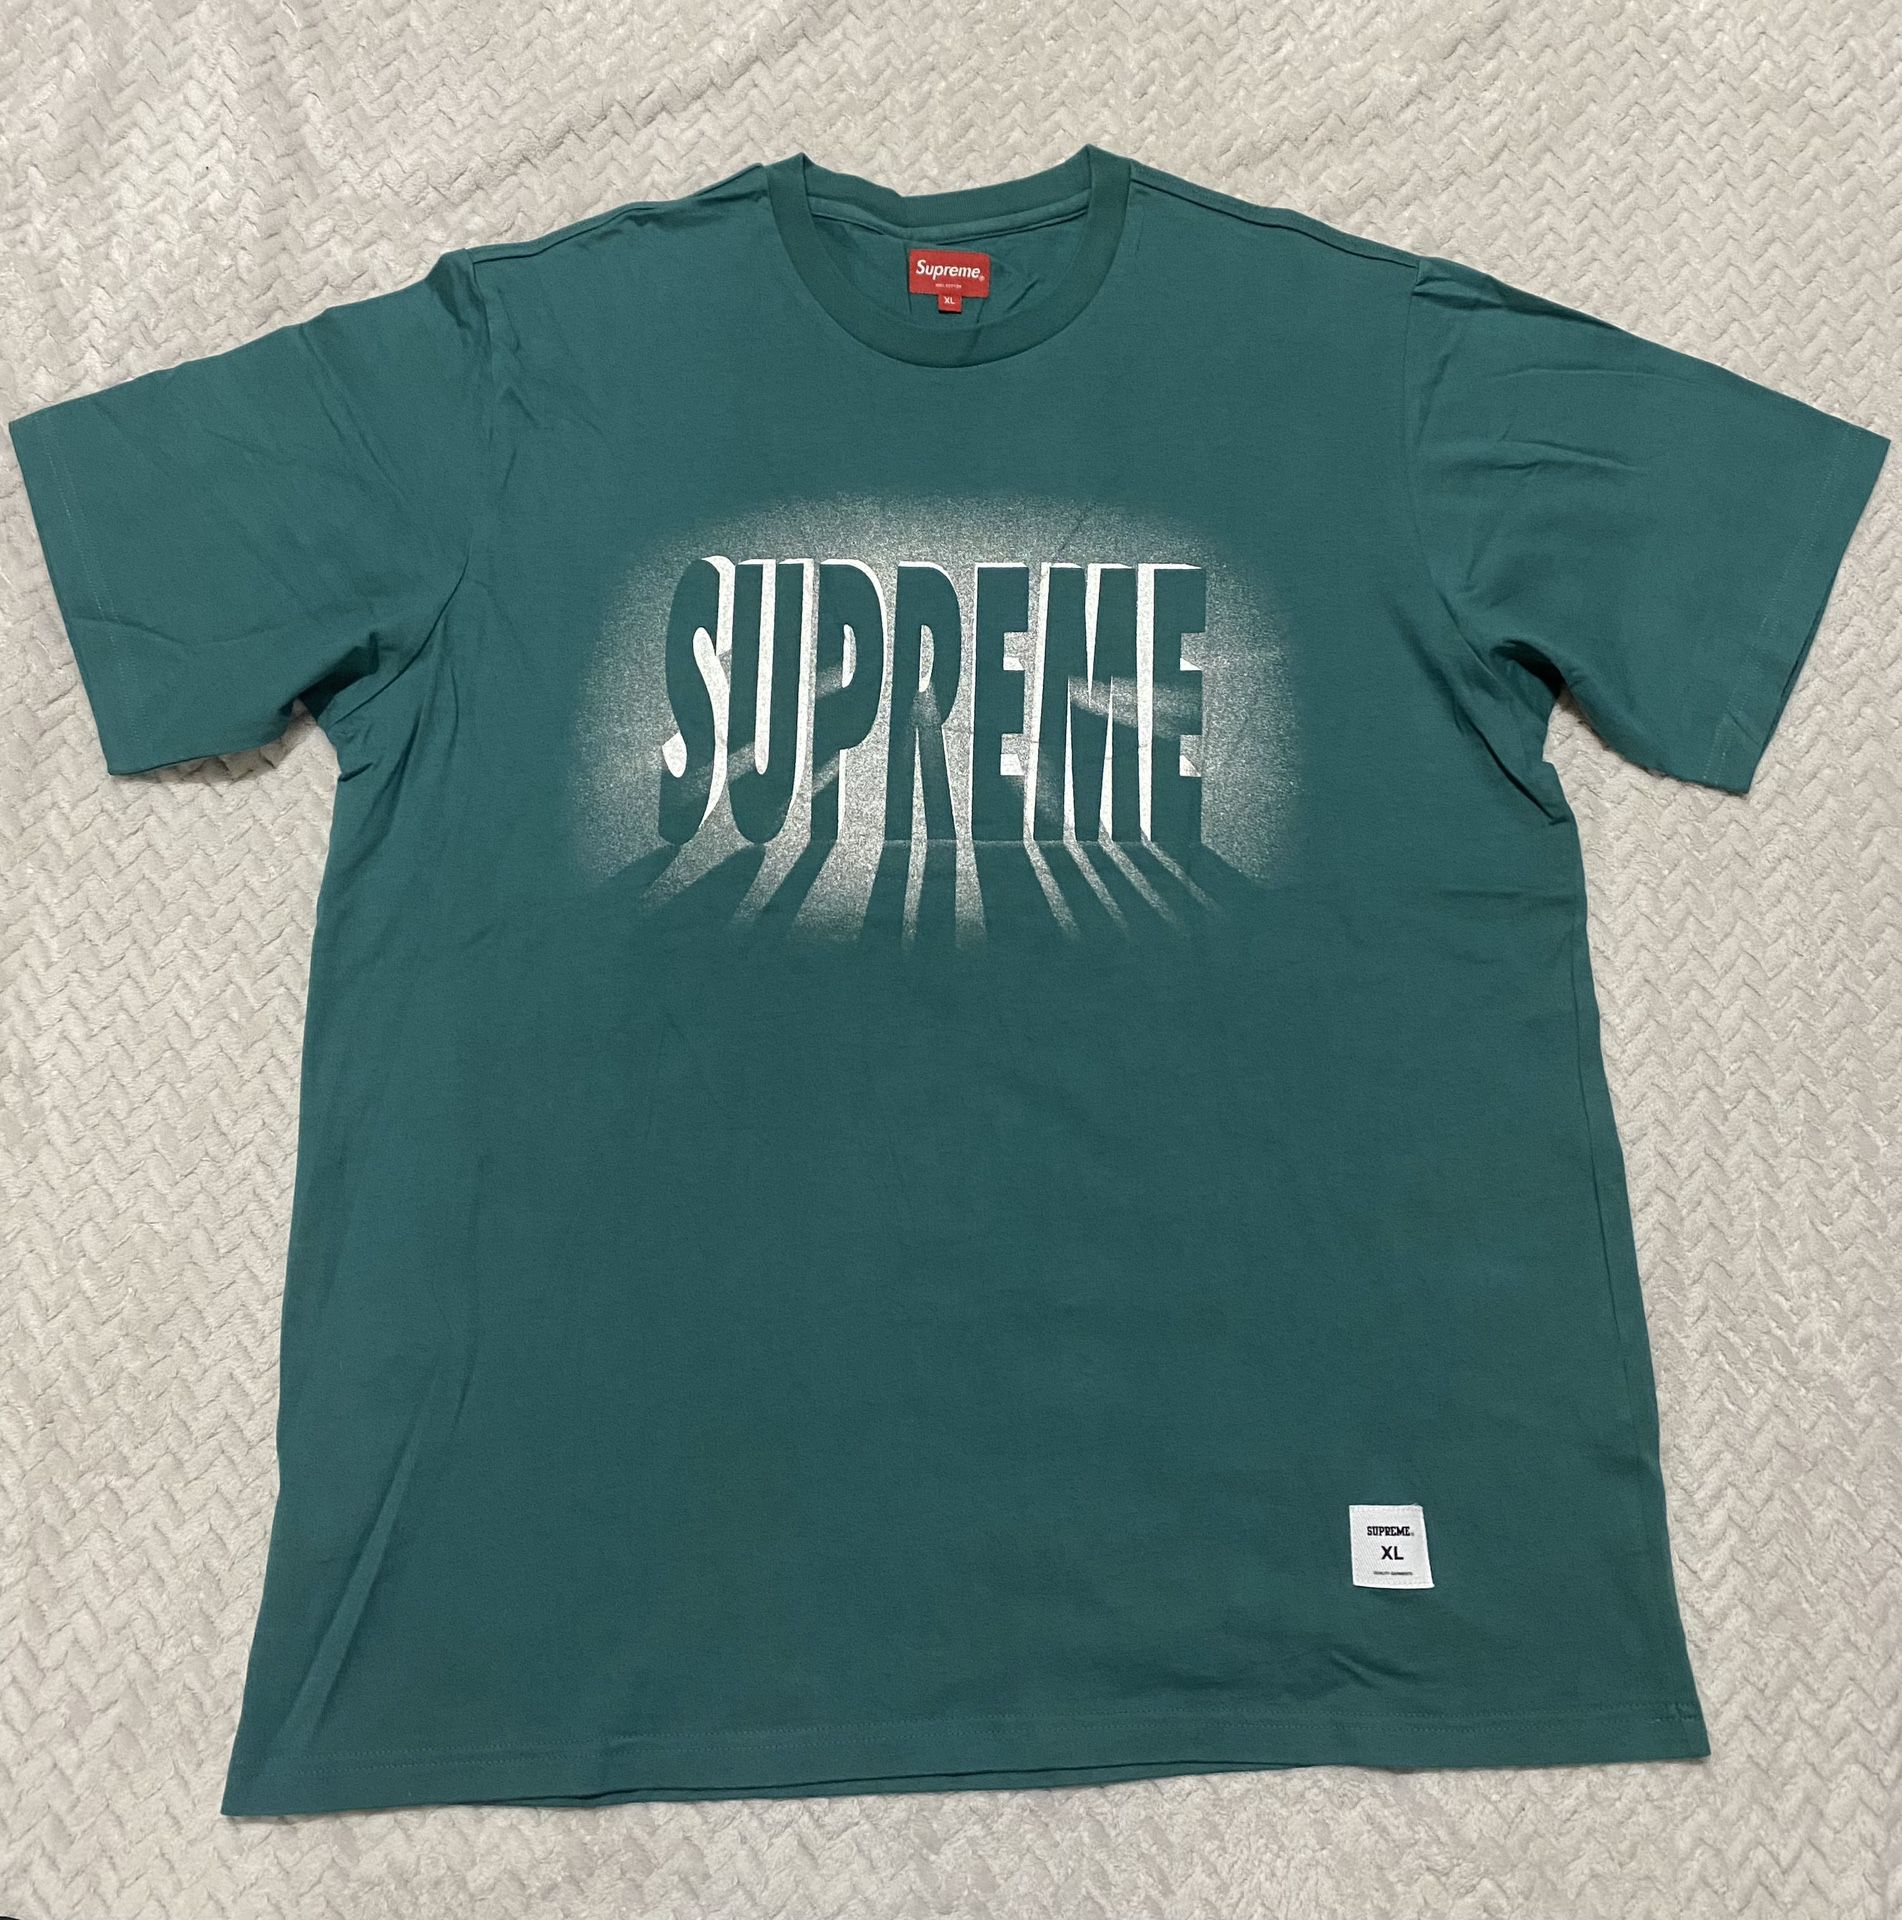 Men's Supreme T-Shirt Size XL Green